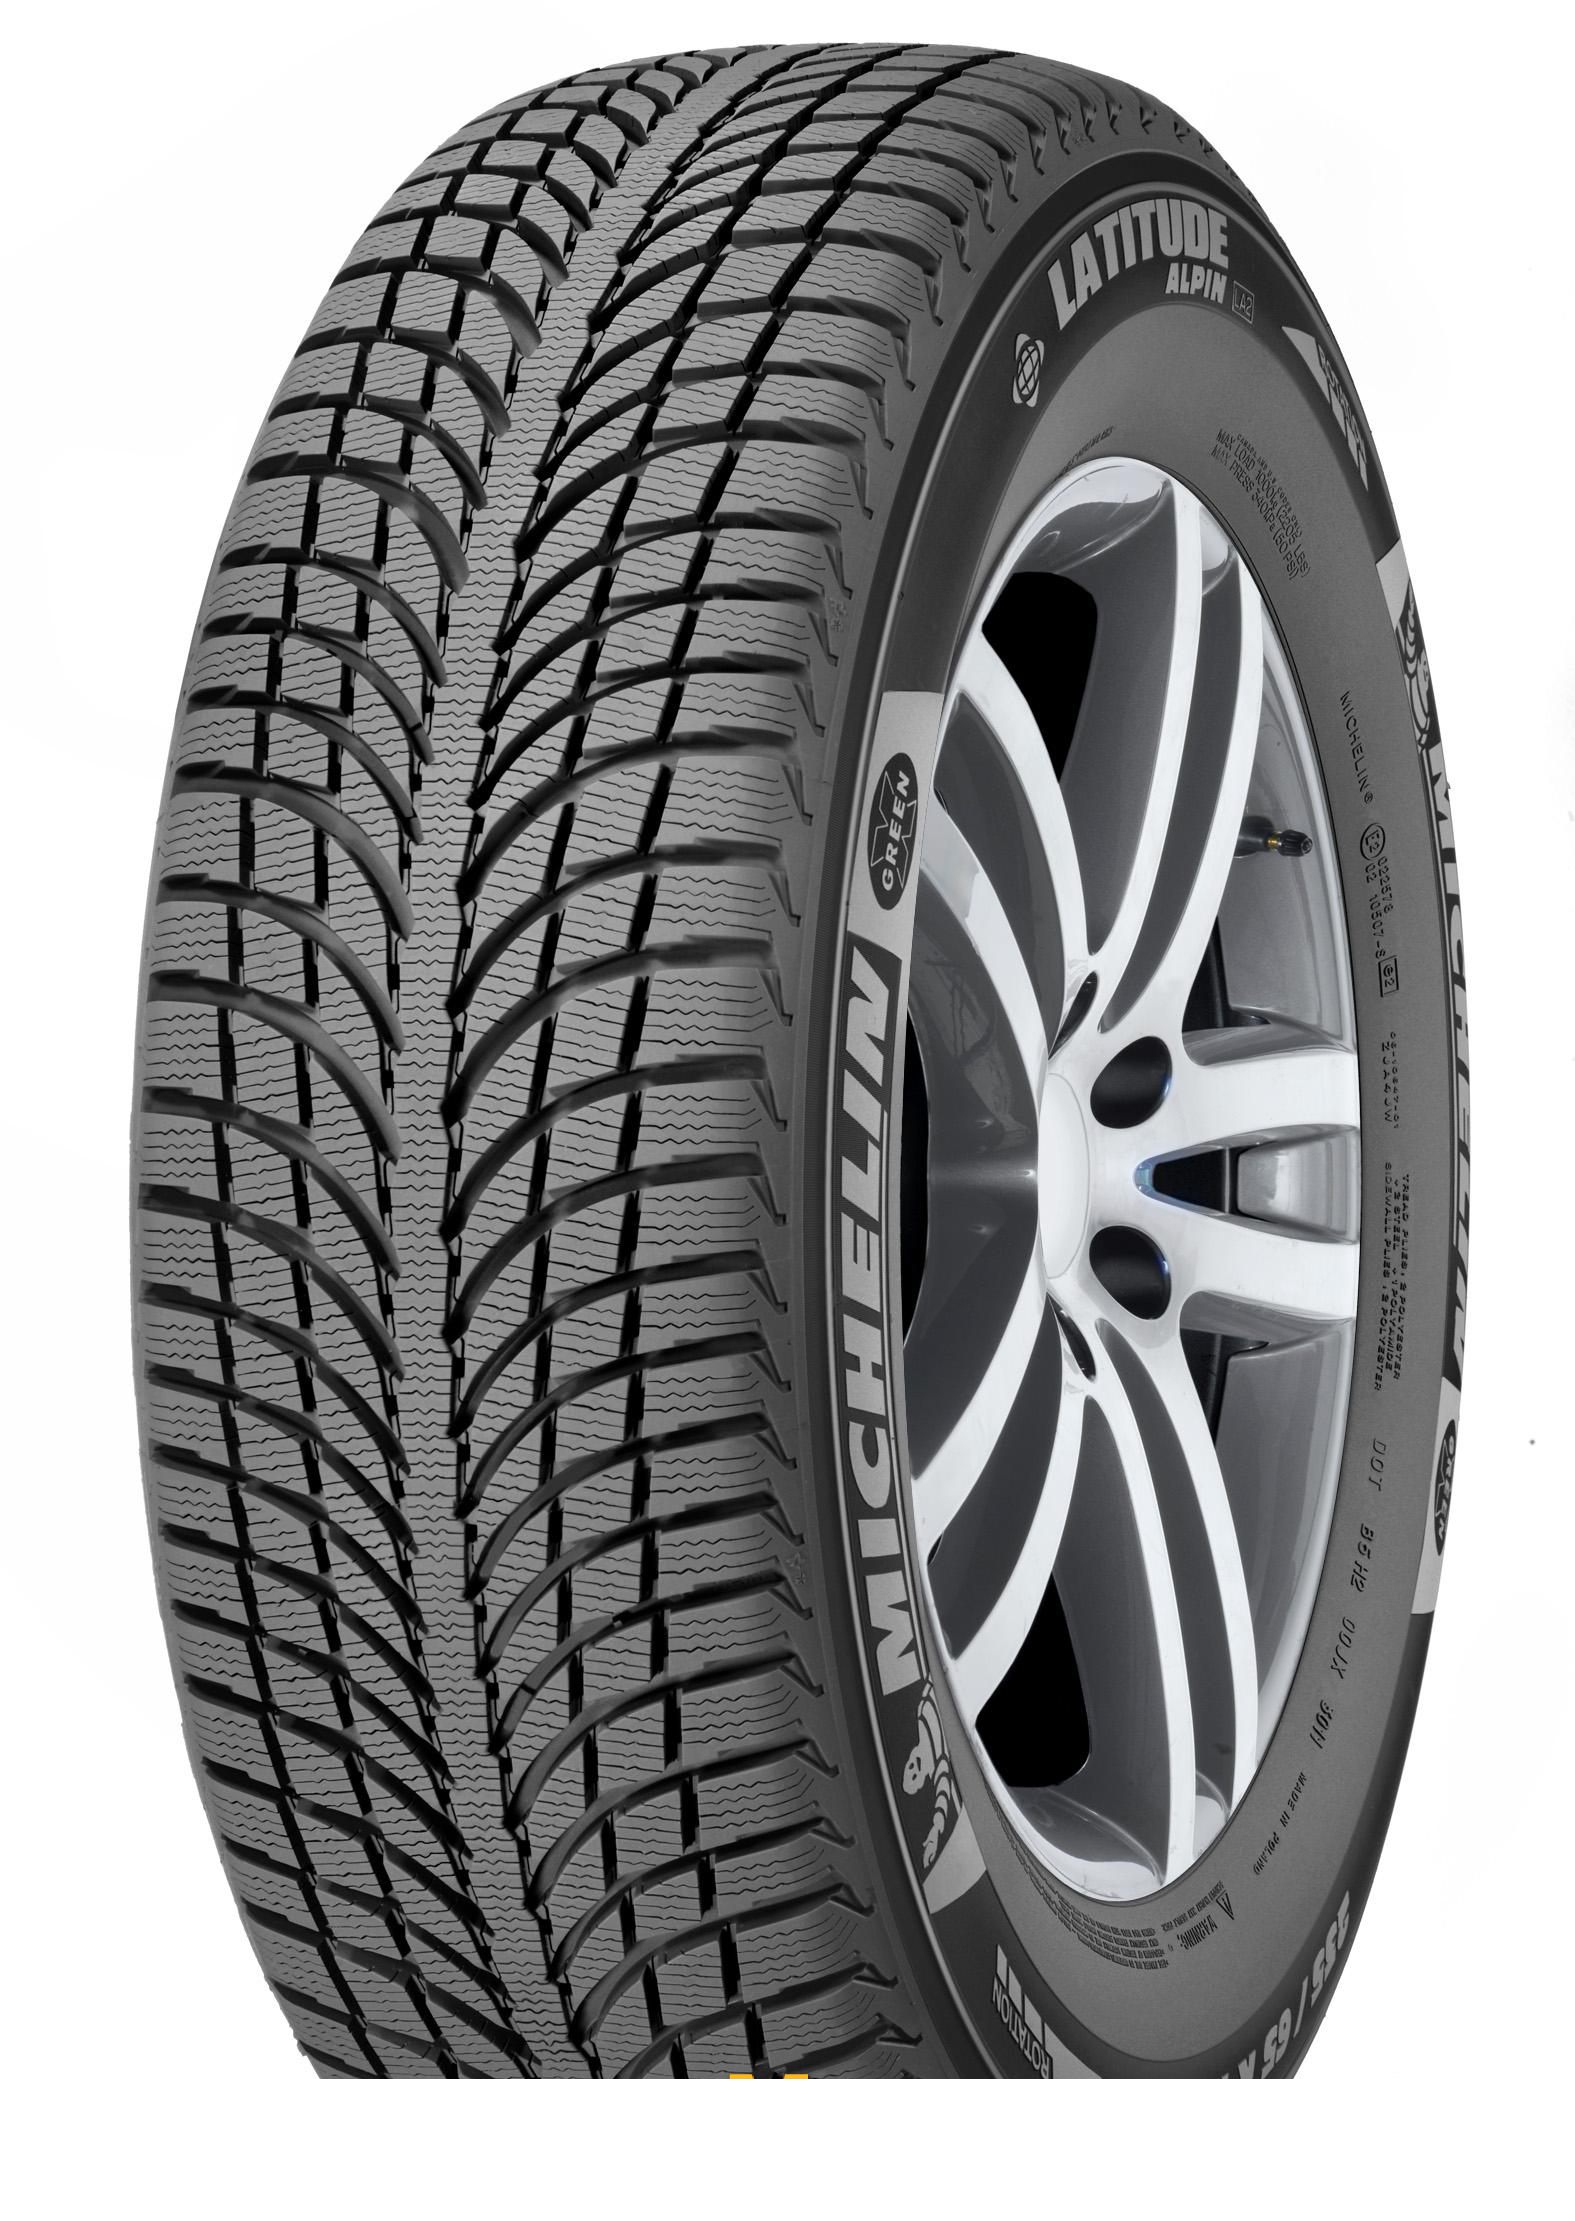 Tire Michelin Latitude Alpin 2 265/60R18 114H - picture, photo, image